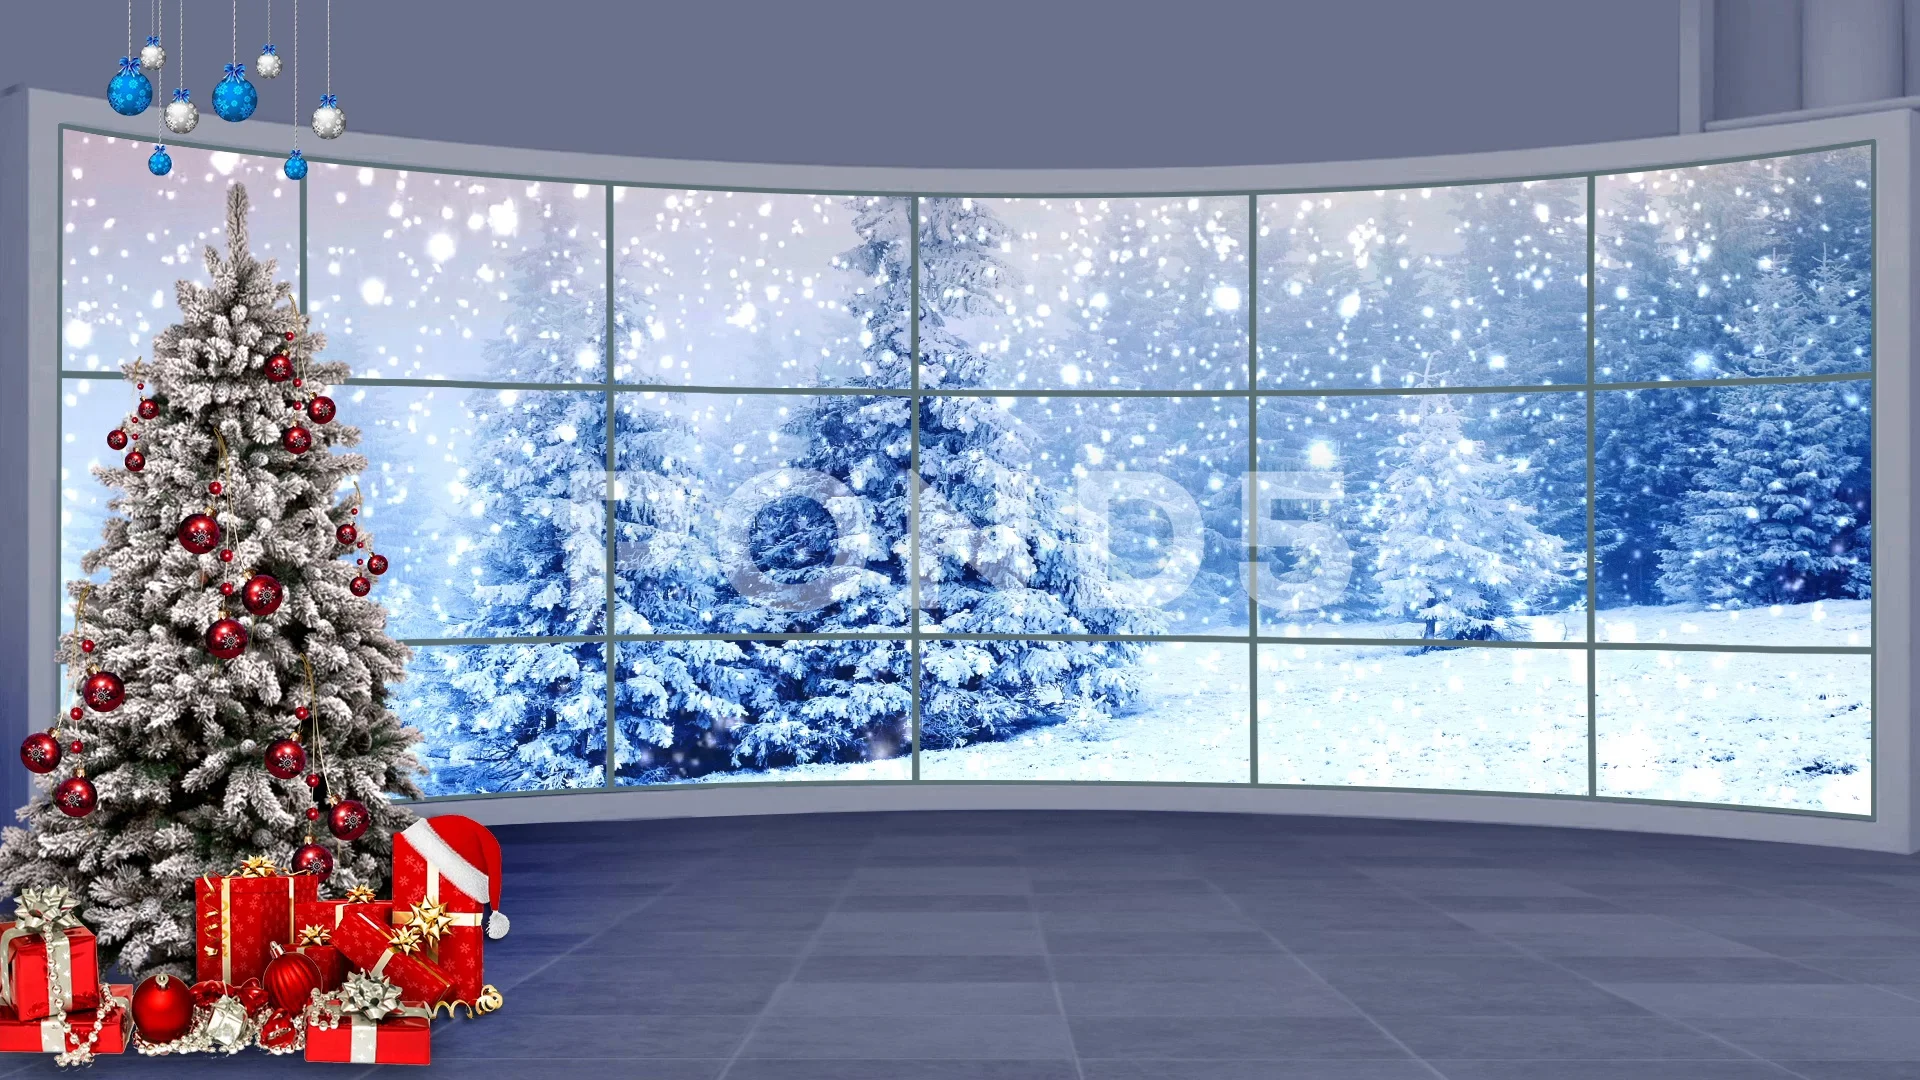 Phông nền Giáng sinh ảo HD sẽ mang đến cho bạn những giây phút thư giãn trong không gian sống động và tuyệt đẹp nhất. Với hình ảnh chất lượng cao và chuyển động mượt mà, bạn sẽ được hòa mình vào không khí lễ hội đầy vui tươi và ấm áp.